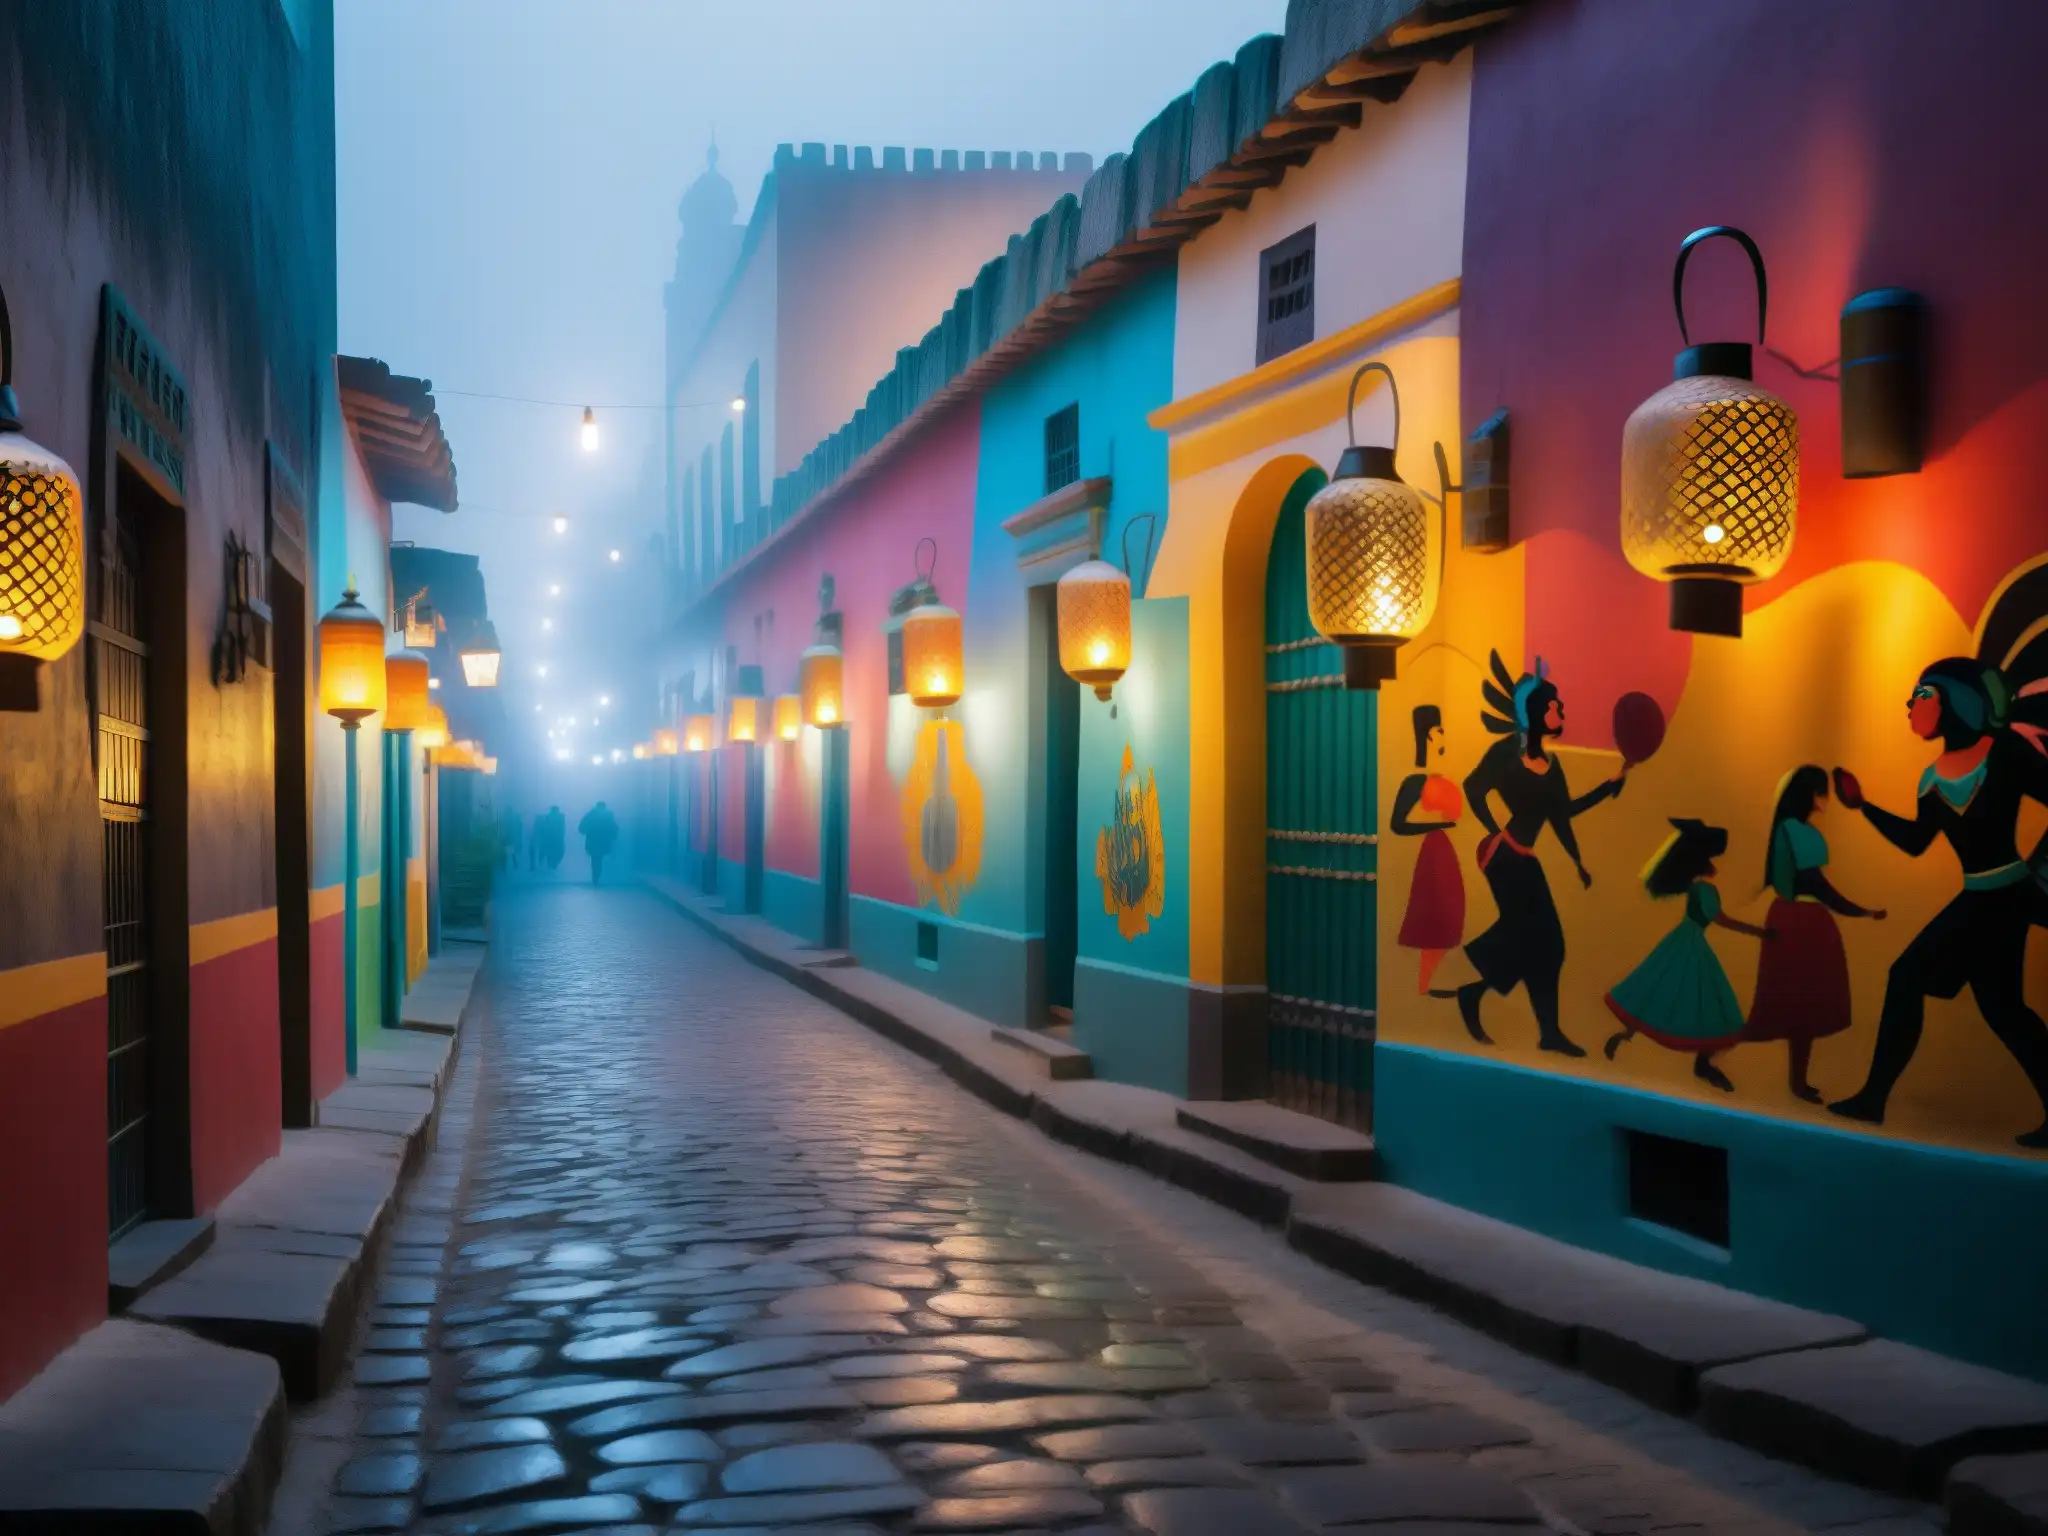 Alleyway en México con murales vibrantes y grafitis de dioses aztecas